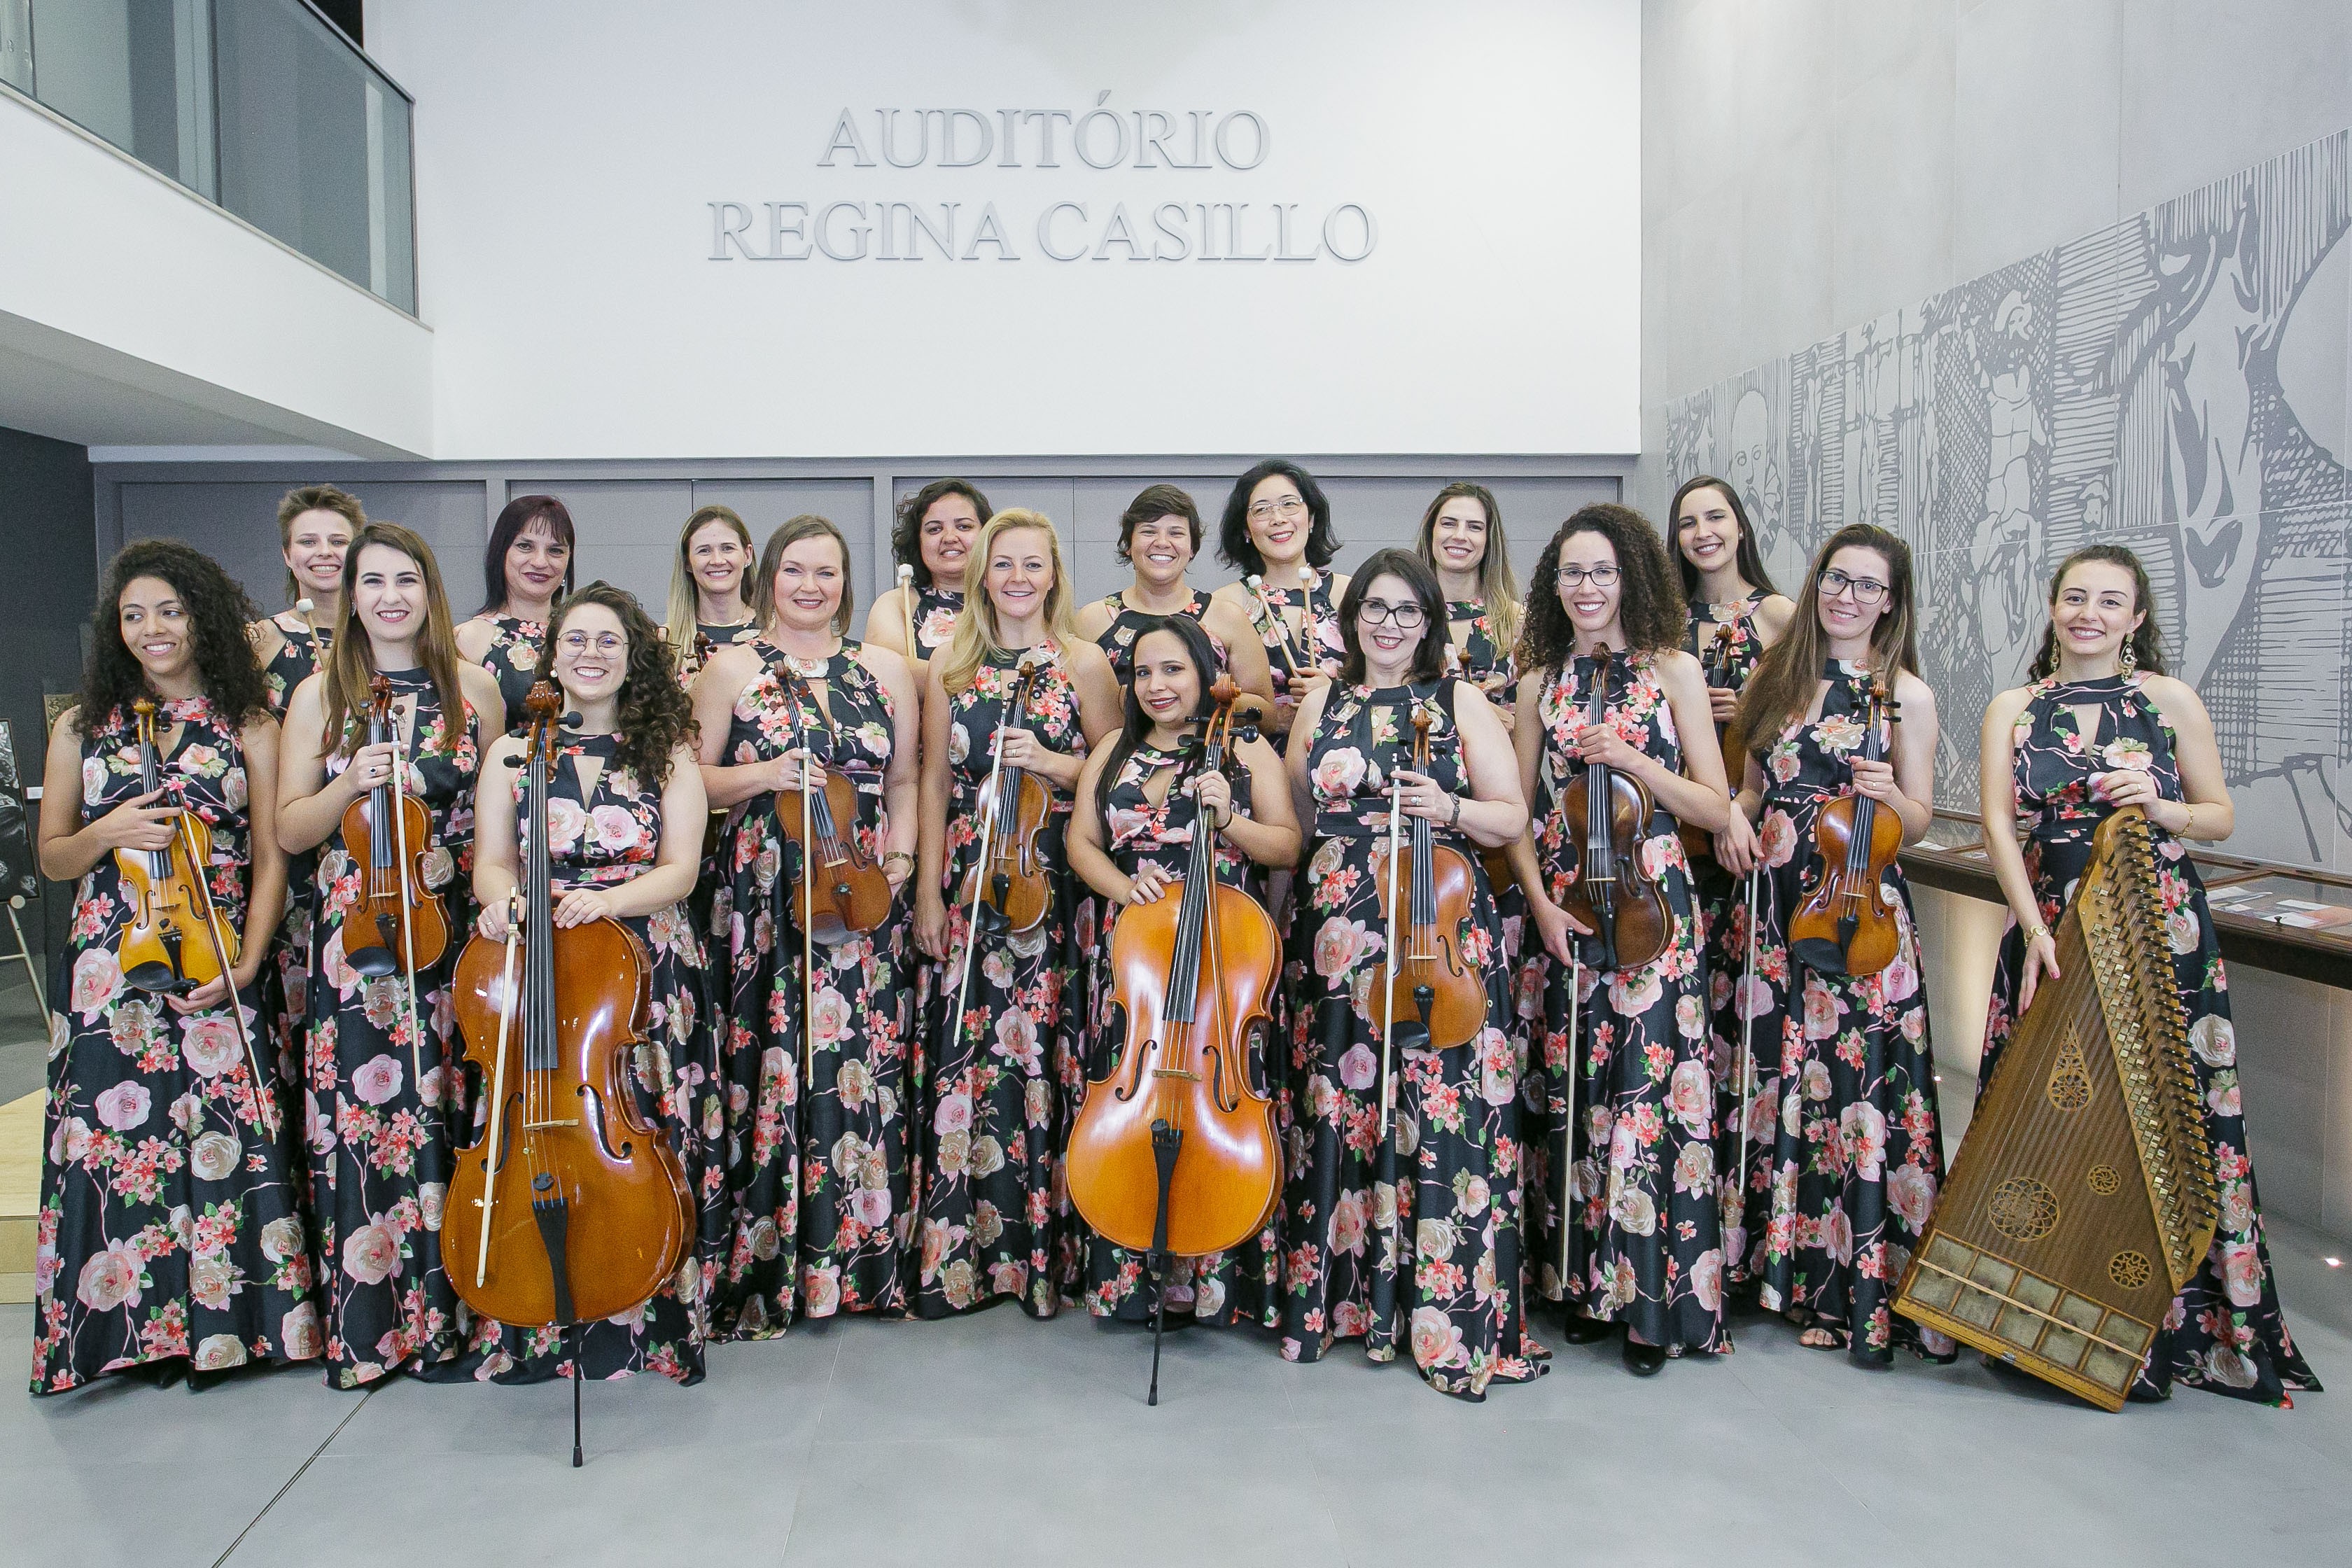 Cantora ucraniana se apresenta com orquestra de mulheres neste fim de semana em Curitiba 